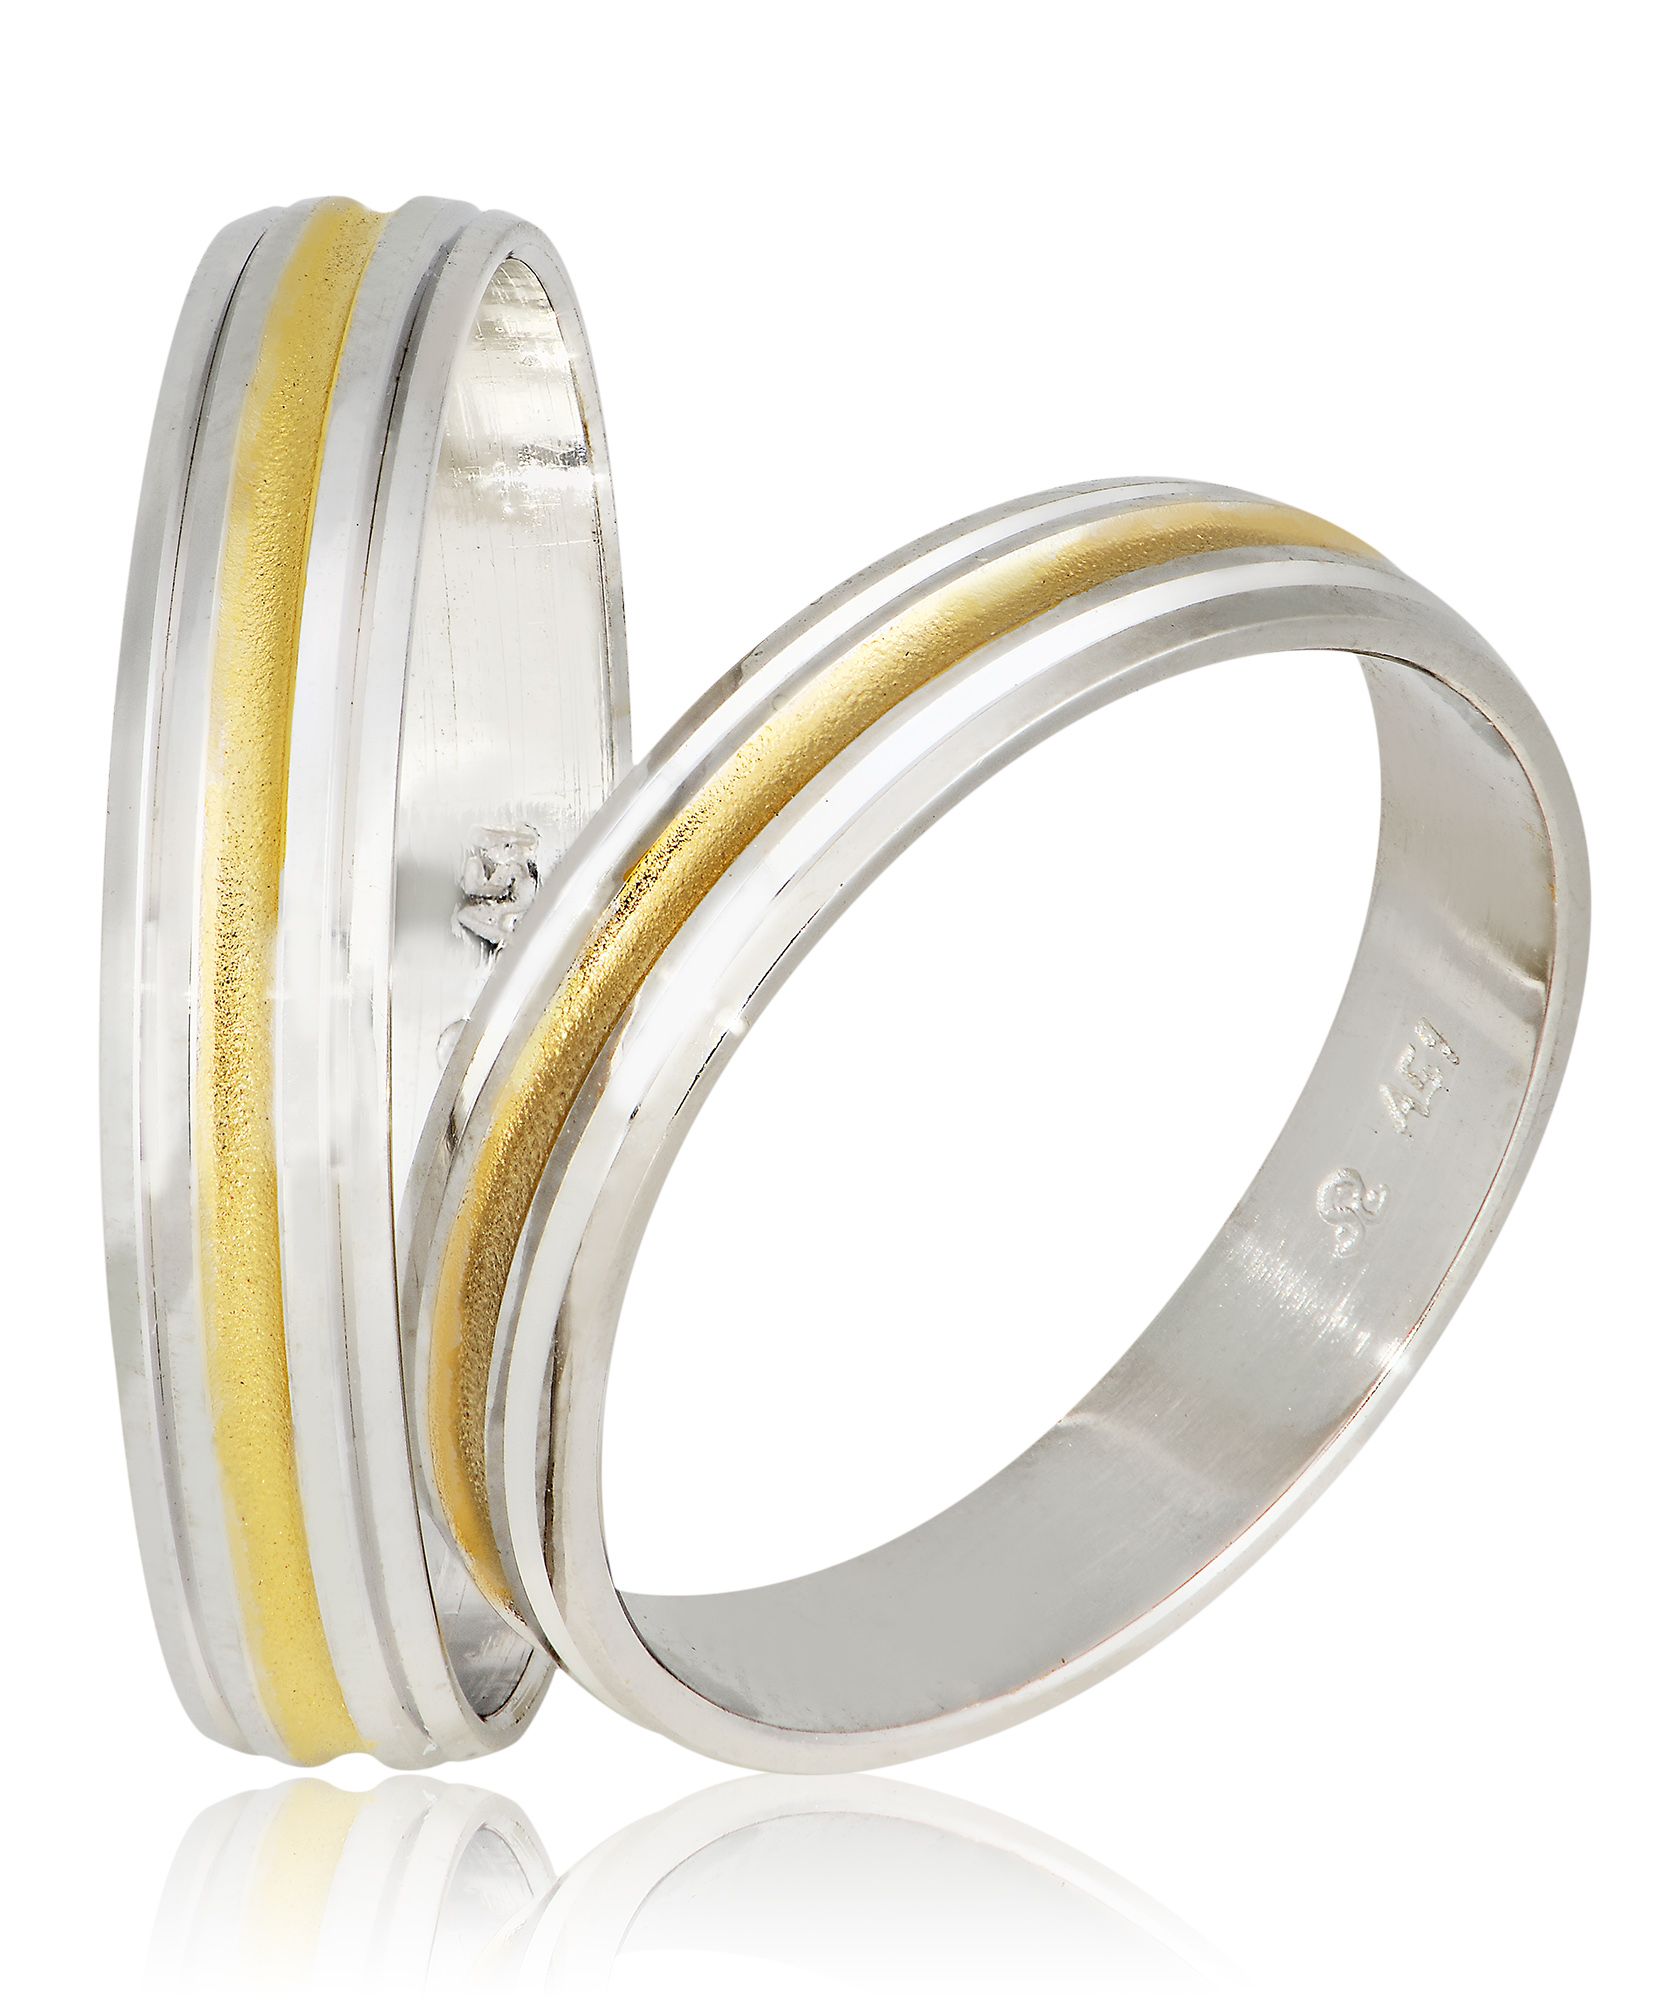 Βέρες γάμου απο λευκό χρυσό 4mm λουστρέ με σαγρέ χρυσό αυλάκι στο κέντρο (code Sxx3)